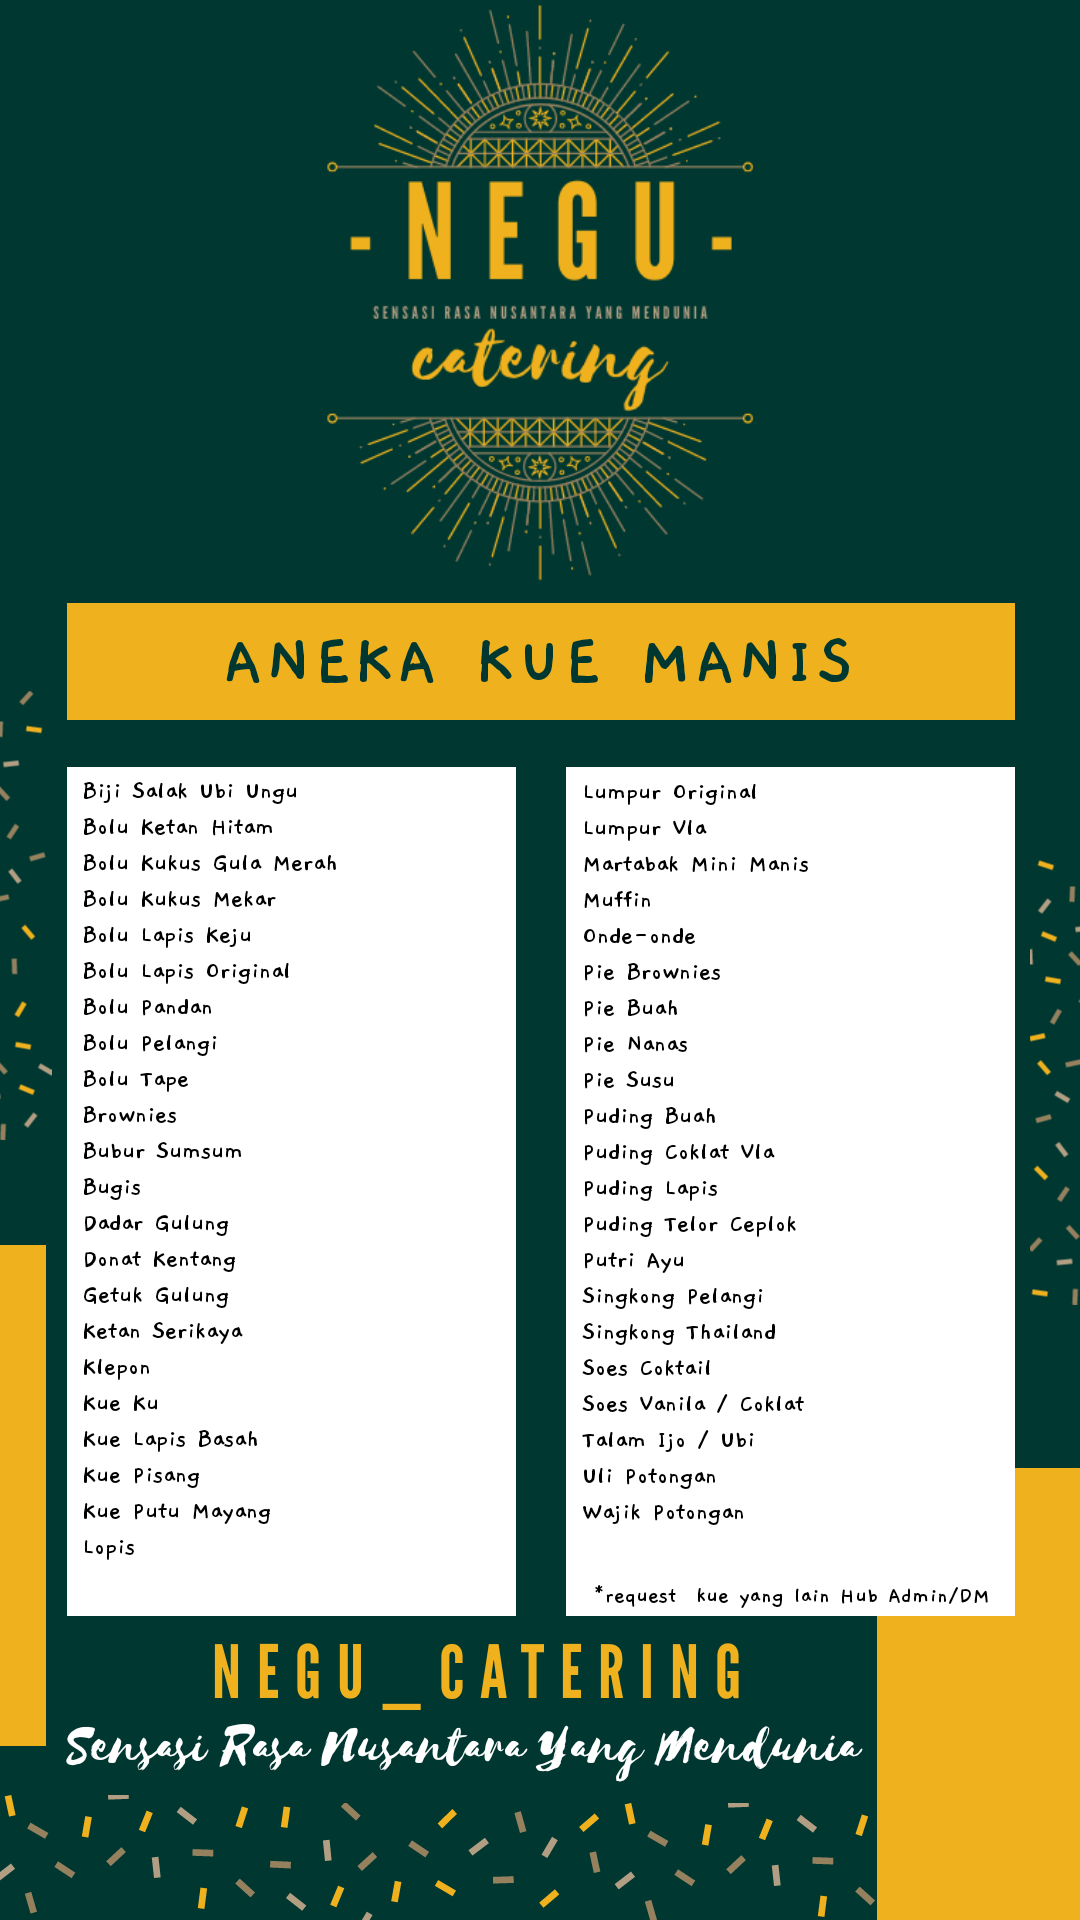 Daftar Menu Aneka Kue Manis